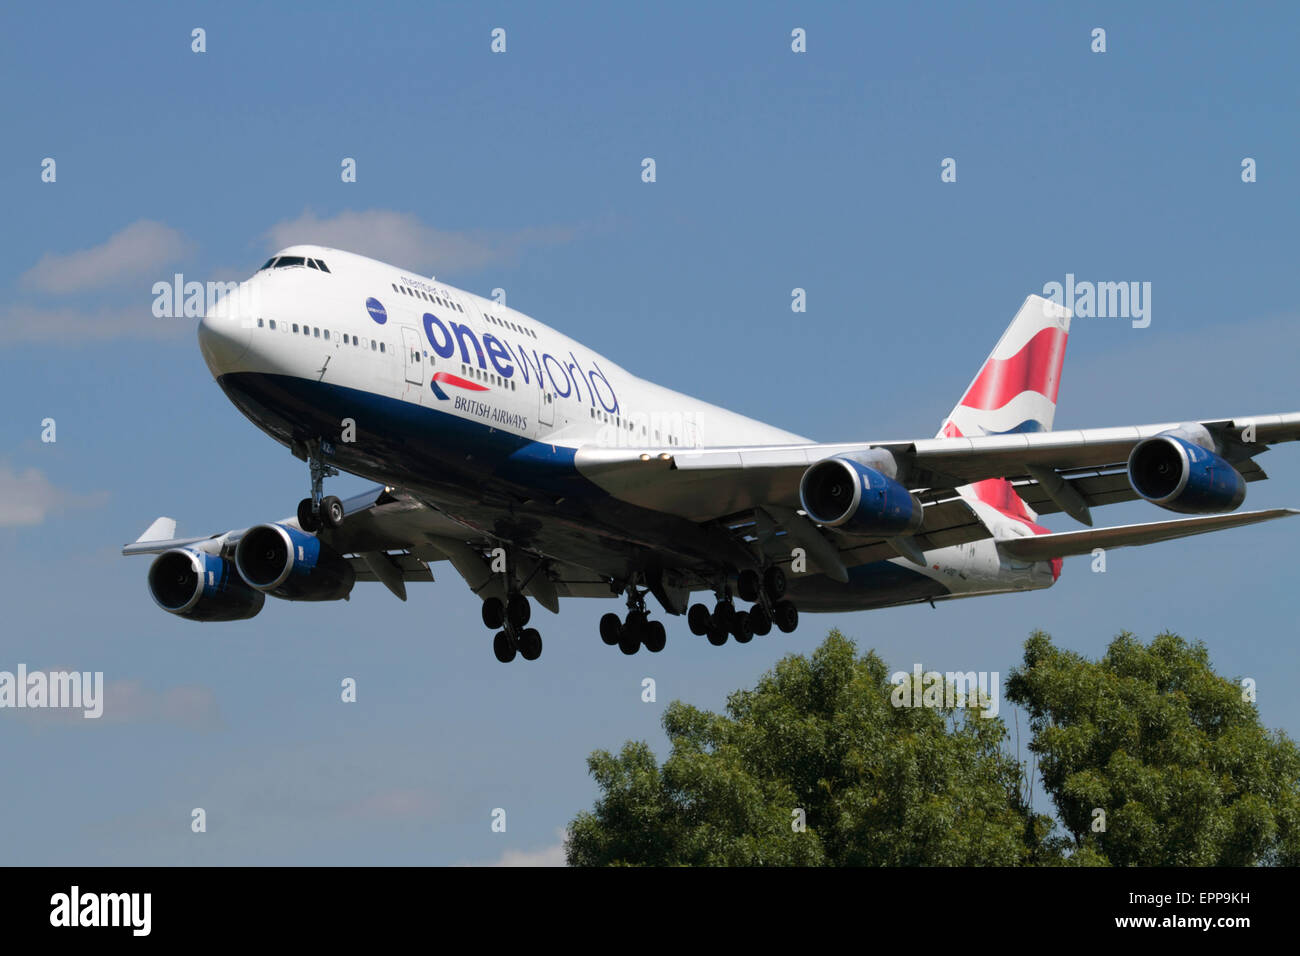 British Airways Boeing 747-400 jumbo jet cuscinetto piano l'alleanza delle compagnie aeree oneworld logo su approccio a Londra Heathrow. Viaggi aerei internazionali. Foto Stock